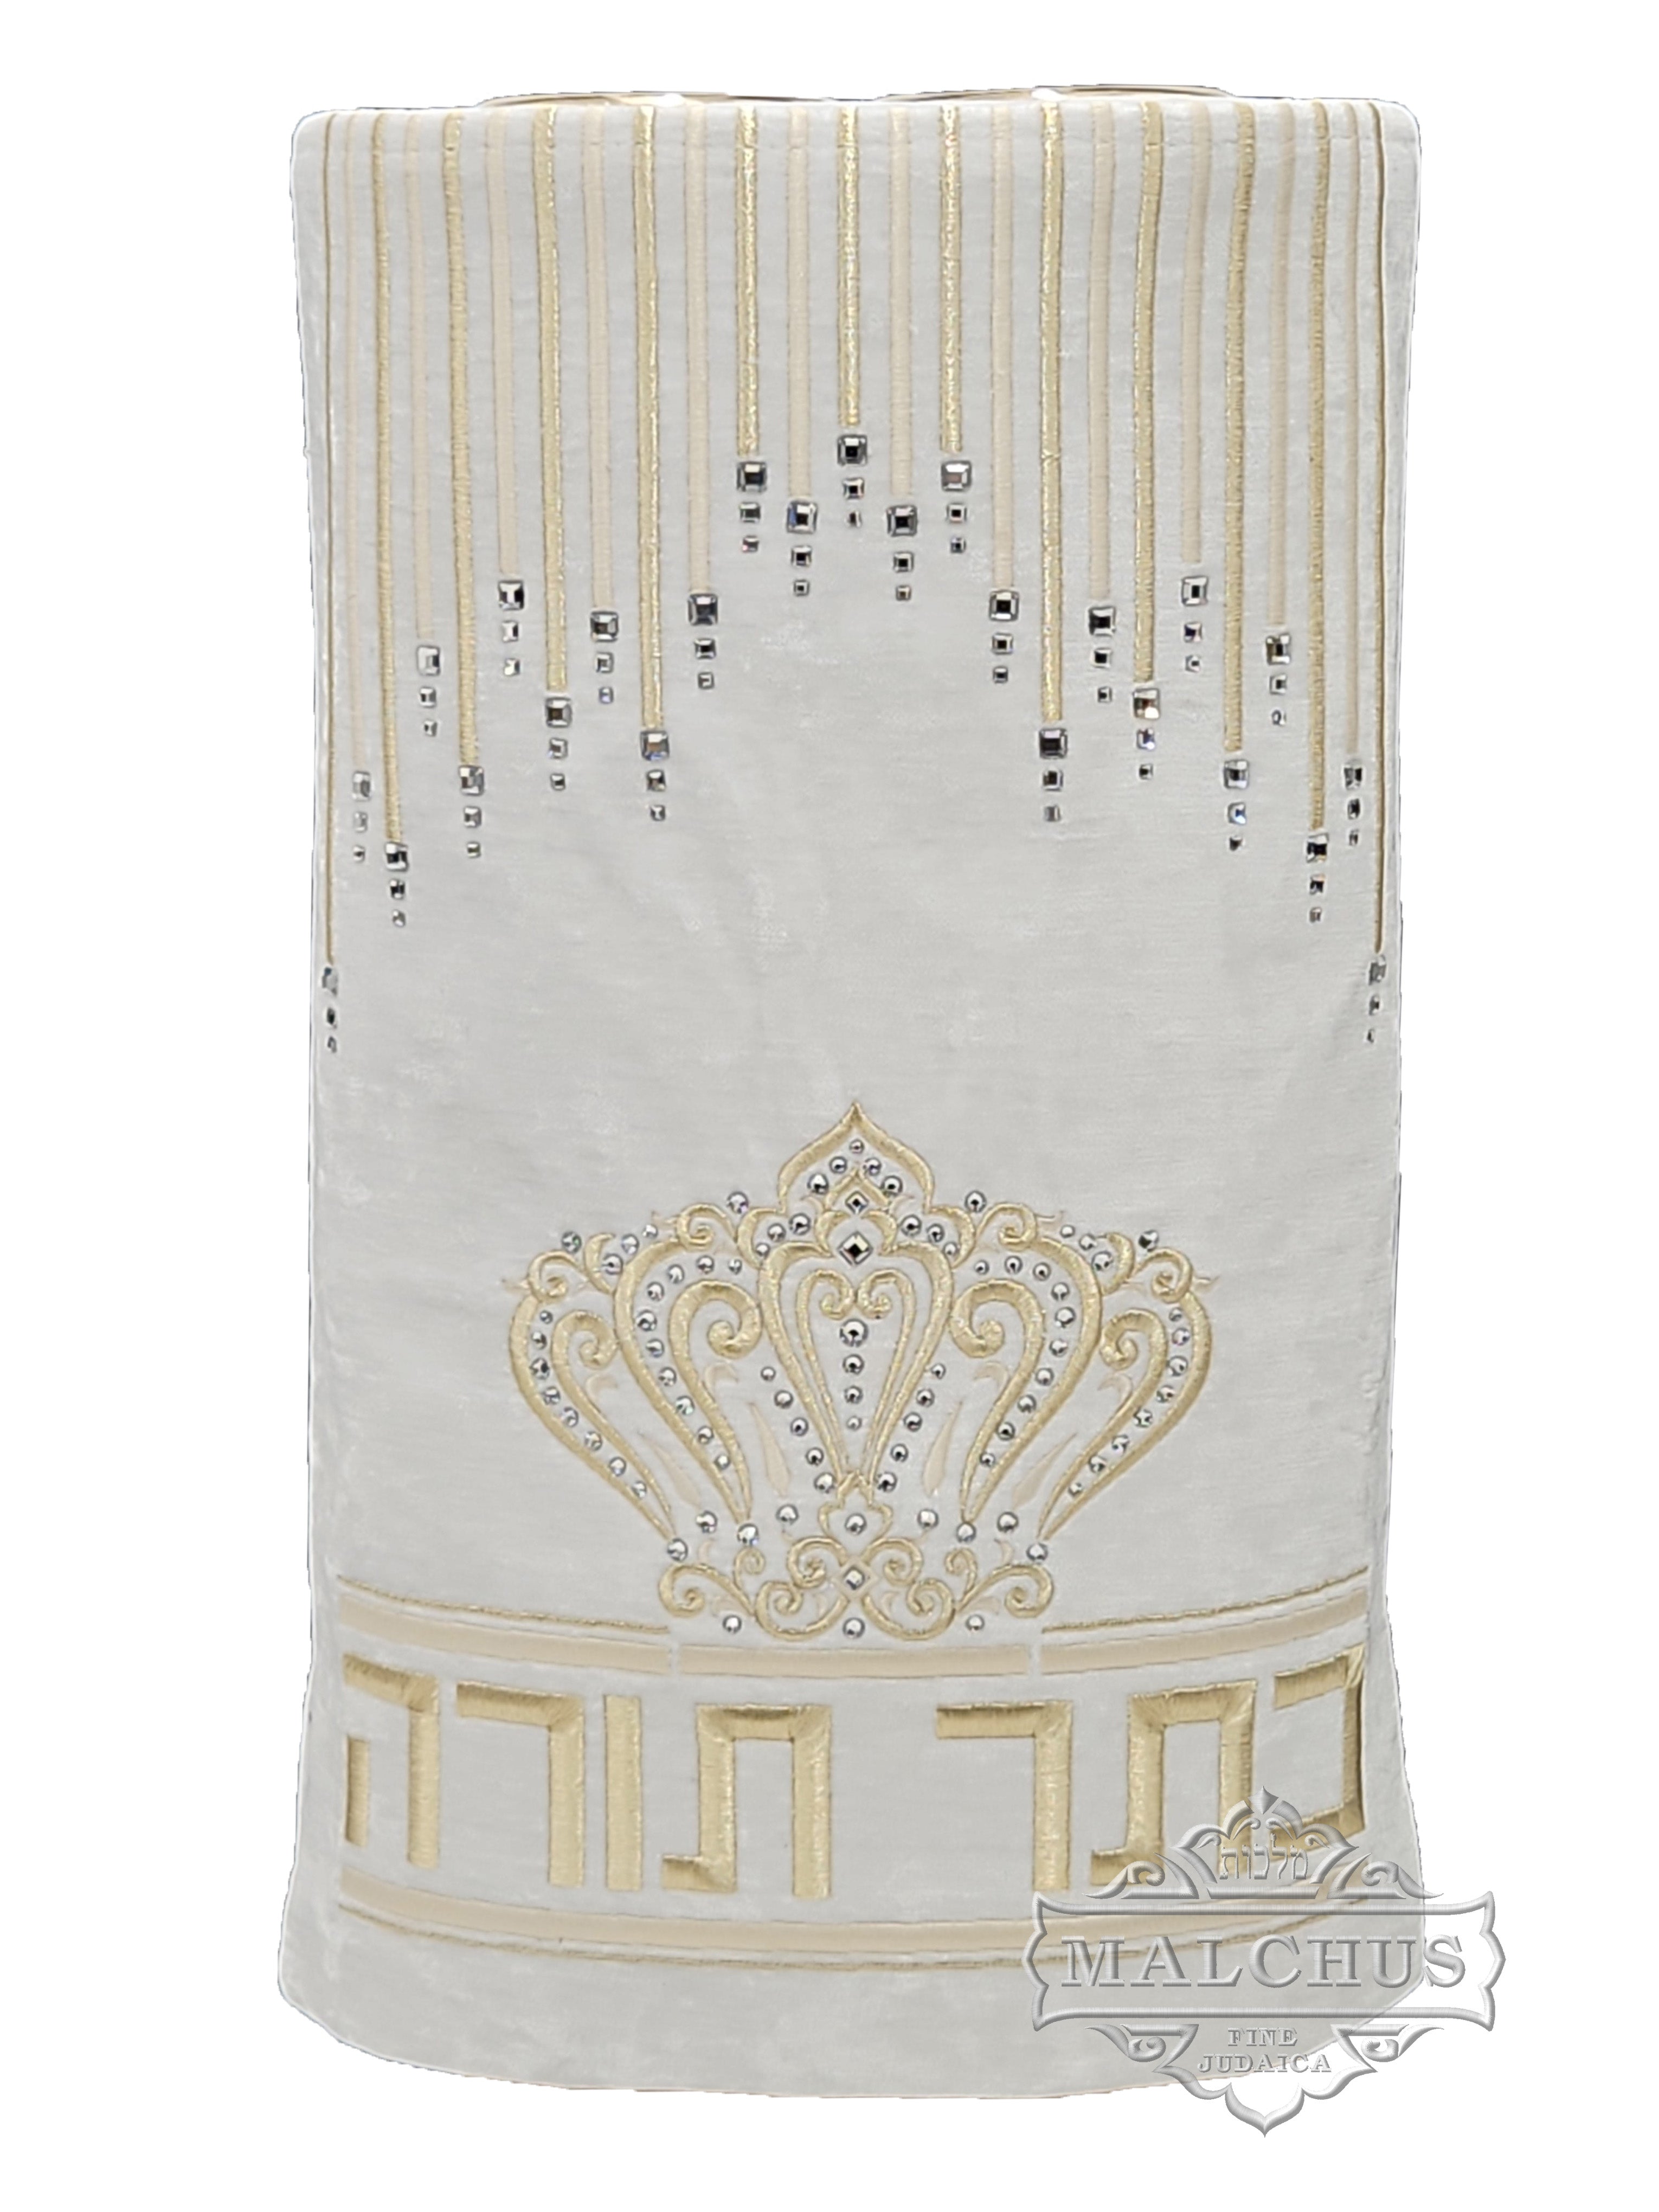 Sefer Torah Mantel #188-2